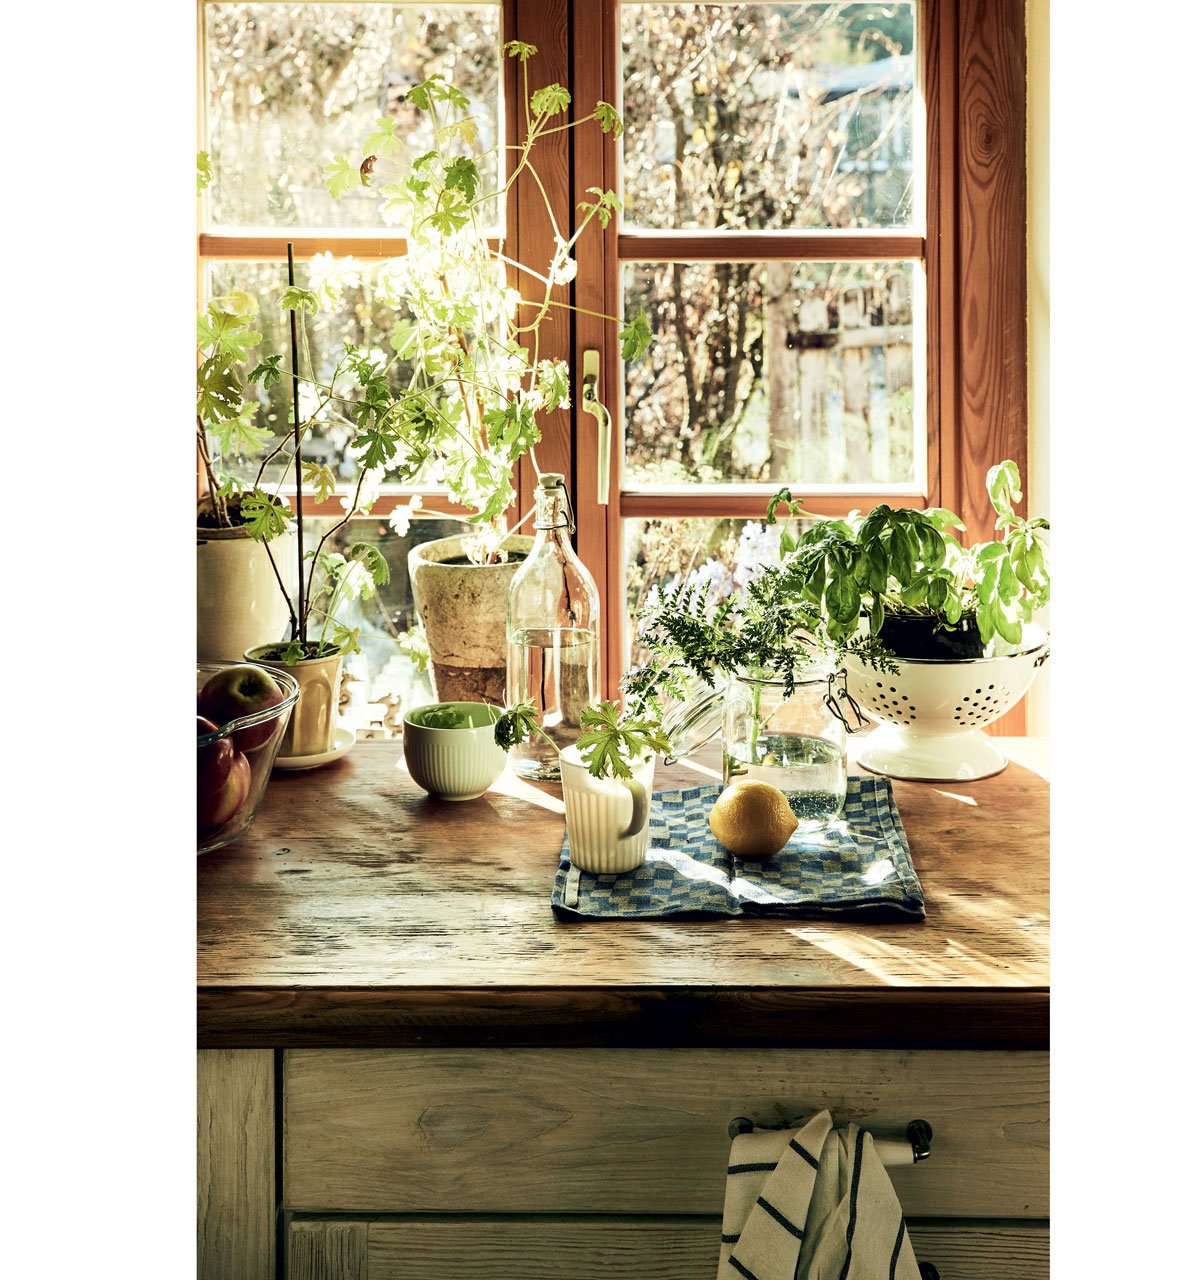 kuchyňské okno s bylinkama ve vázách a pěstěbných nádobách